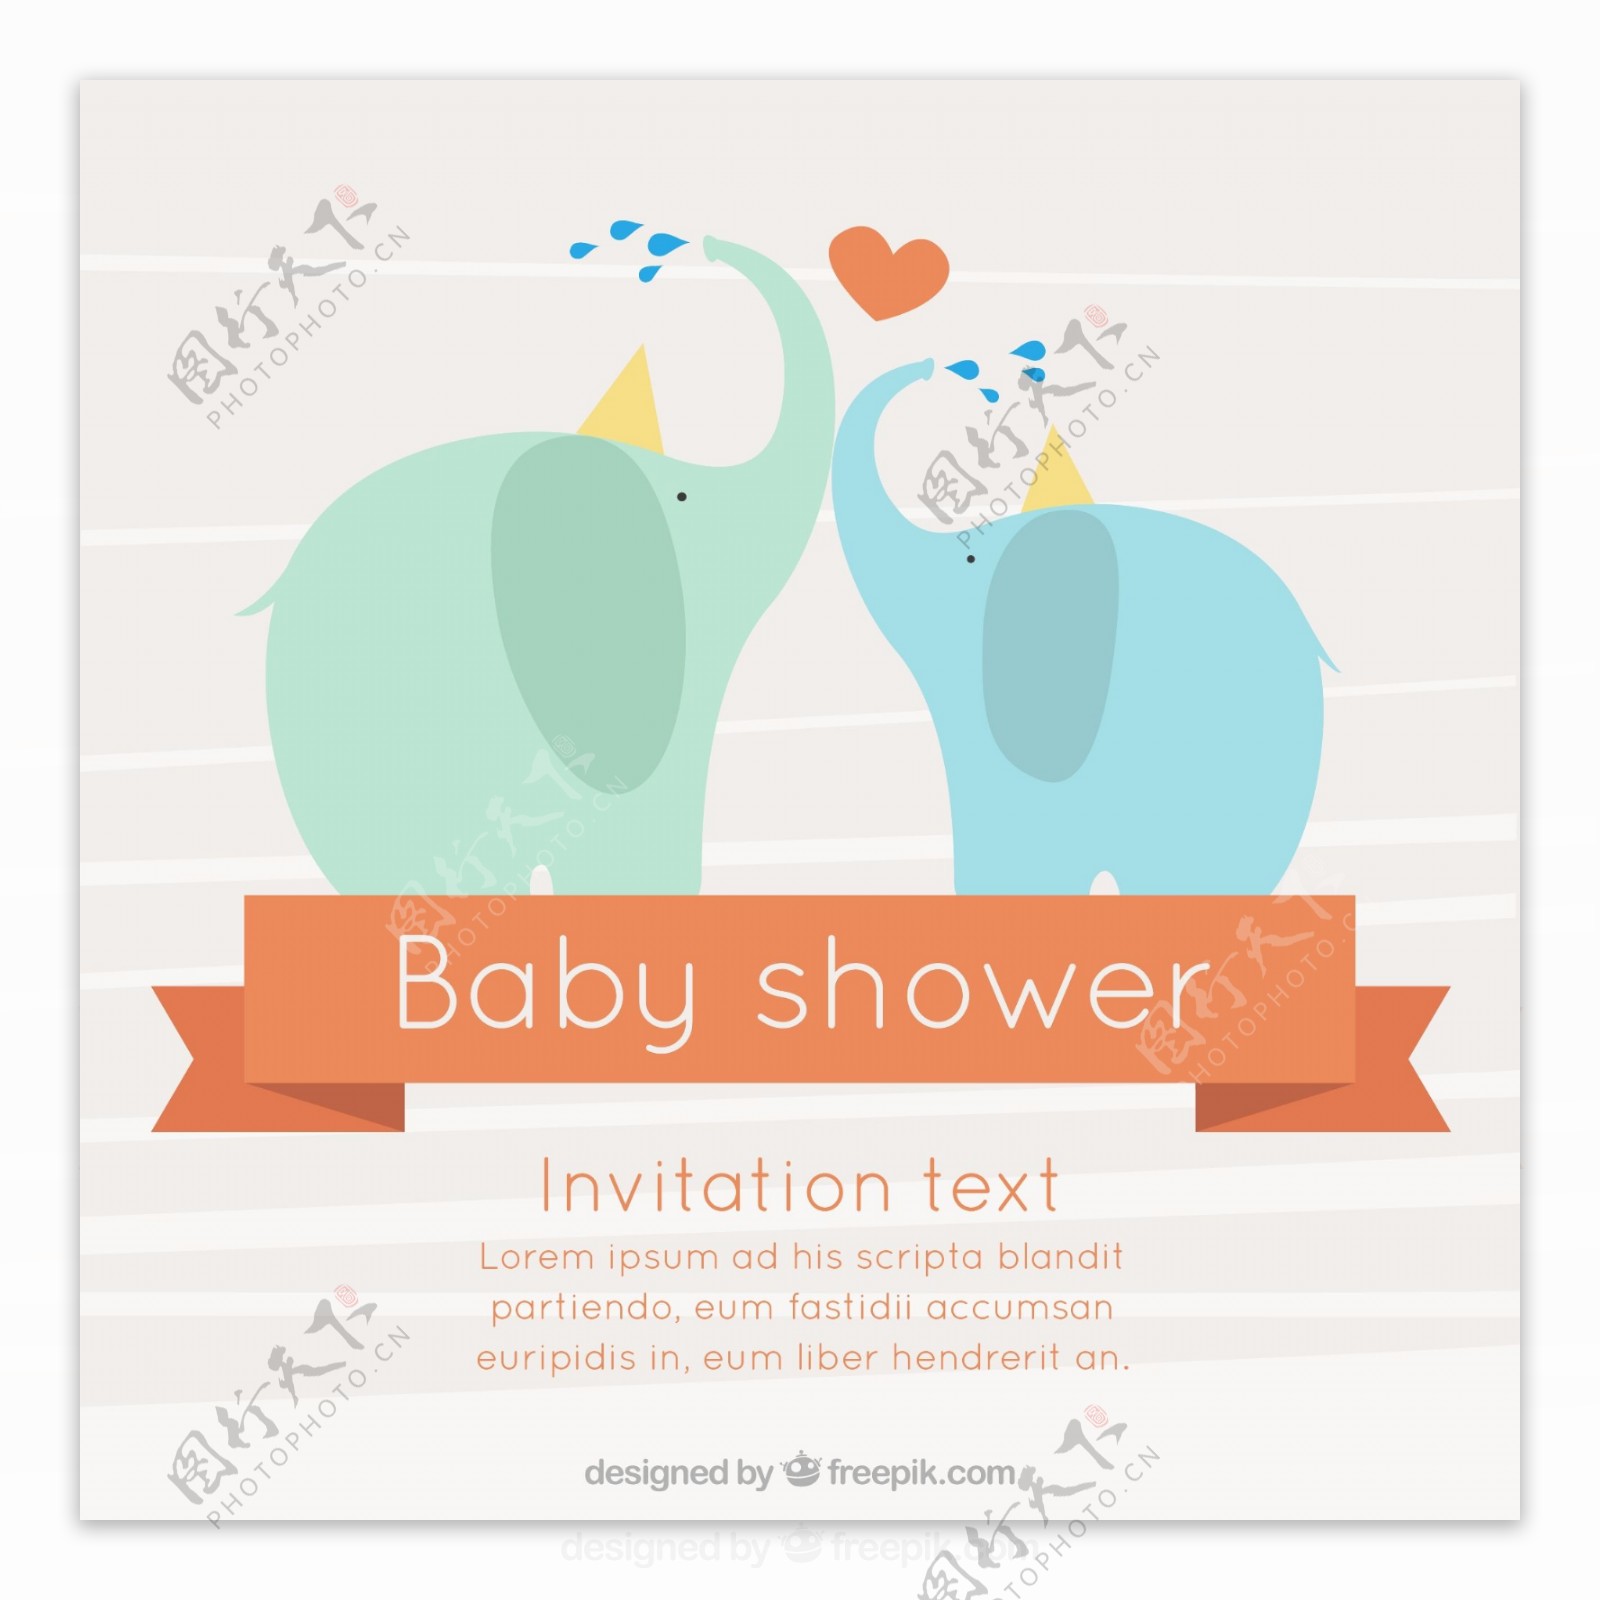 可爱的婴儿淋浴卡与大象